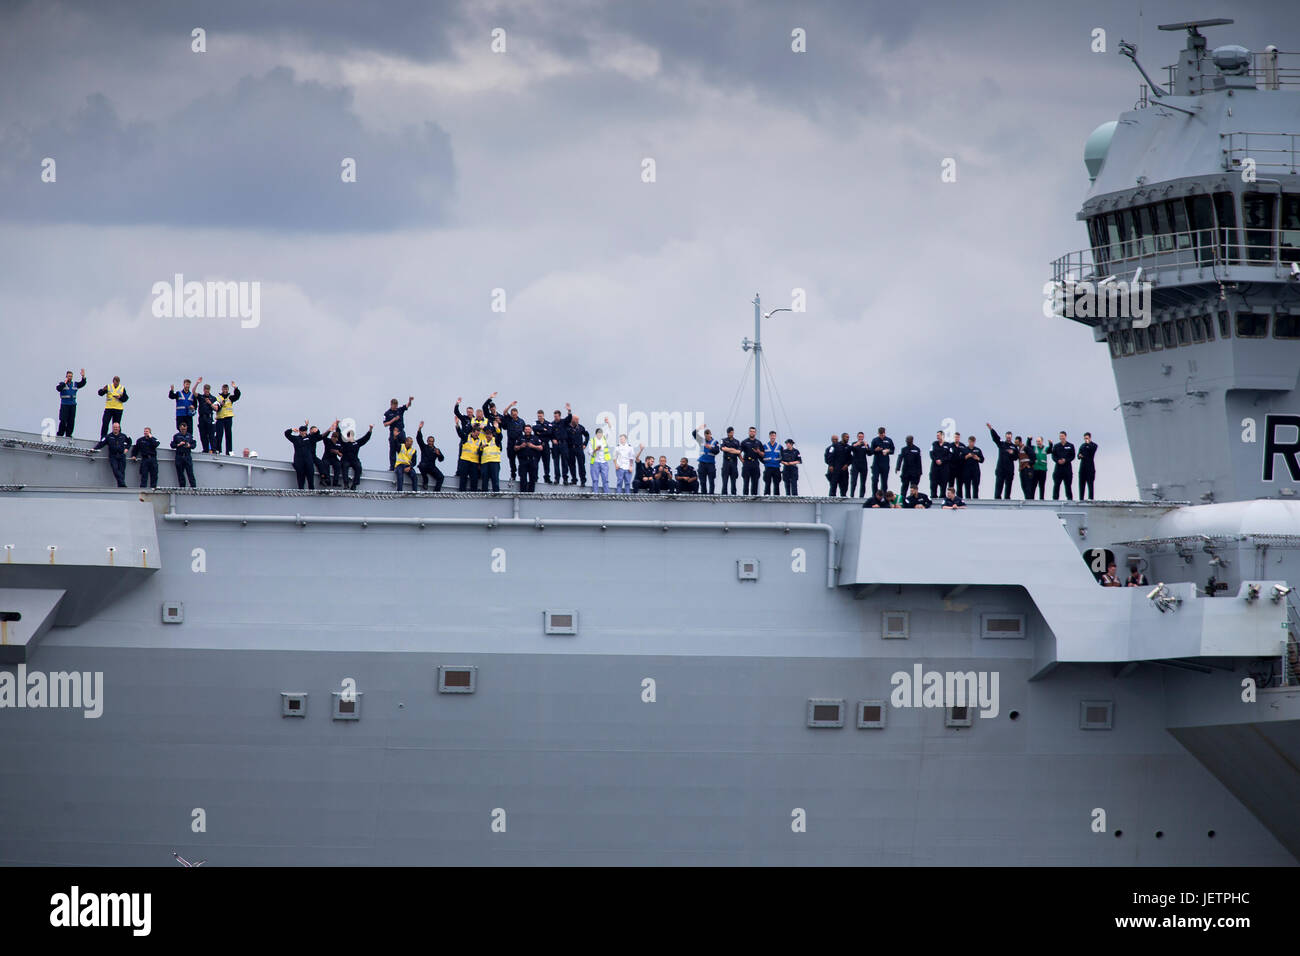 Portaaviones HMS Queen Elizabeth dejando el astillero Rosyth en Fife, Escocia Foto de stock